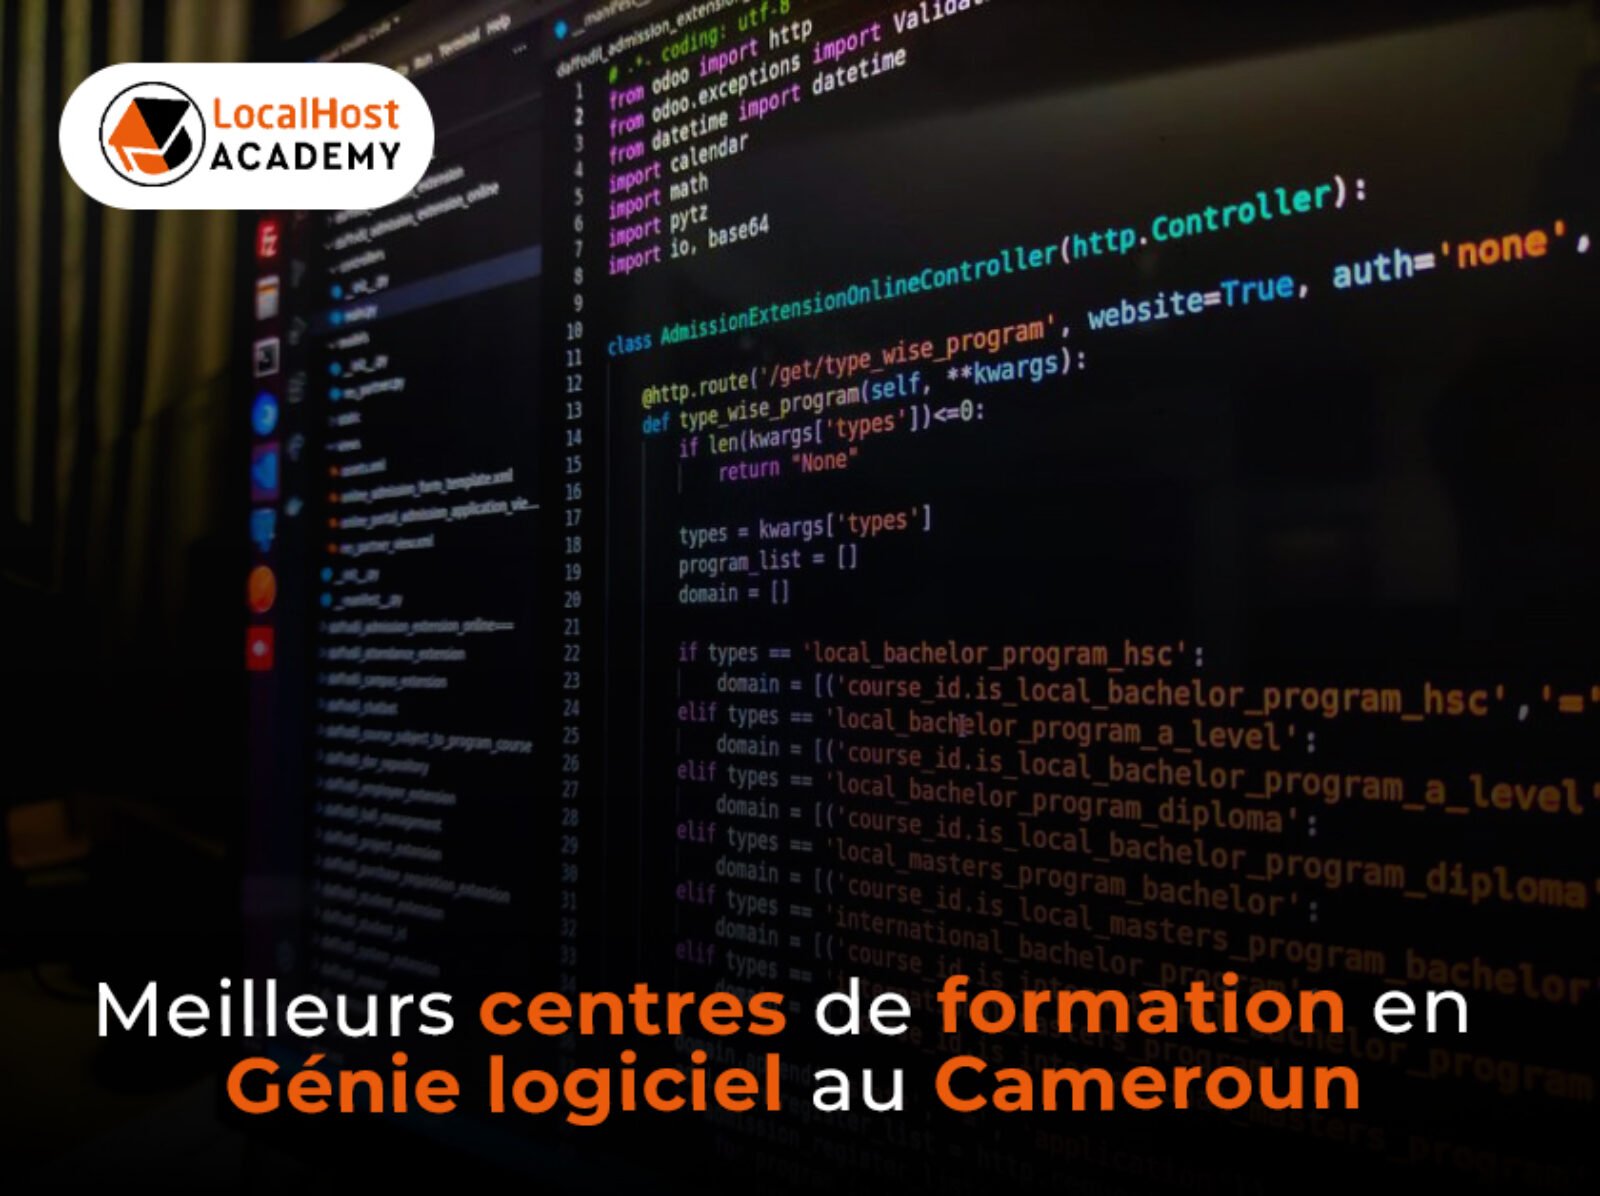 Meilleurs centres de formation en génie logiciel au Cameroun